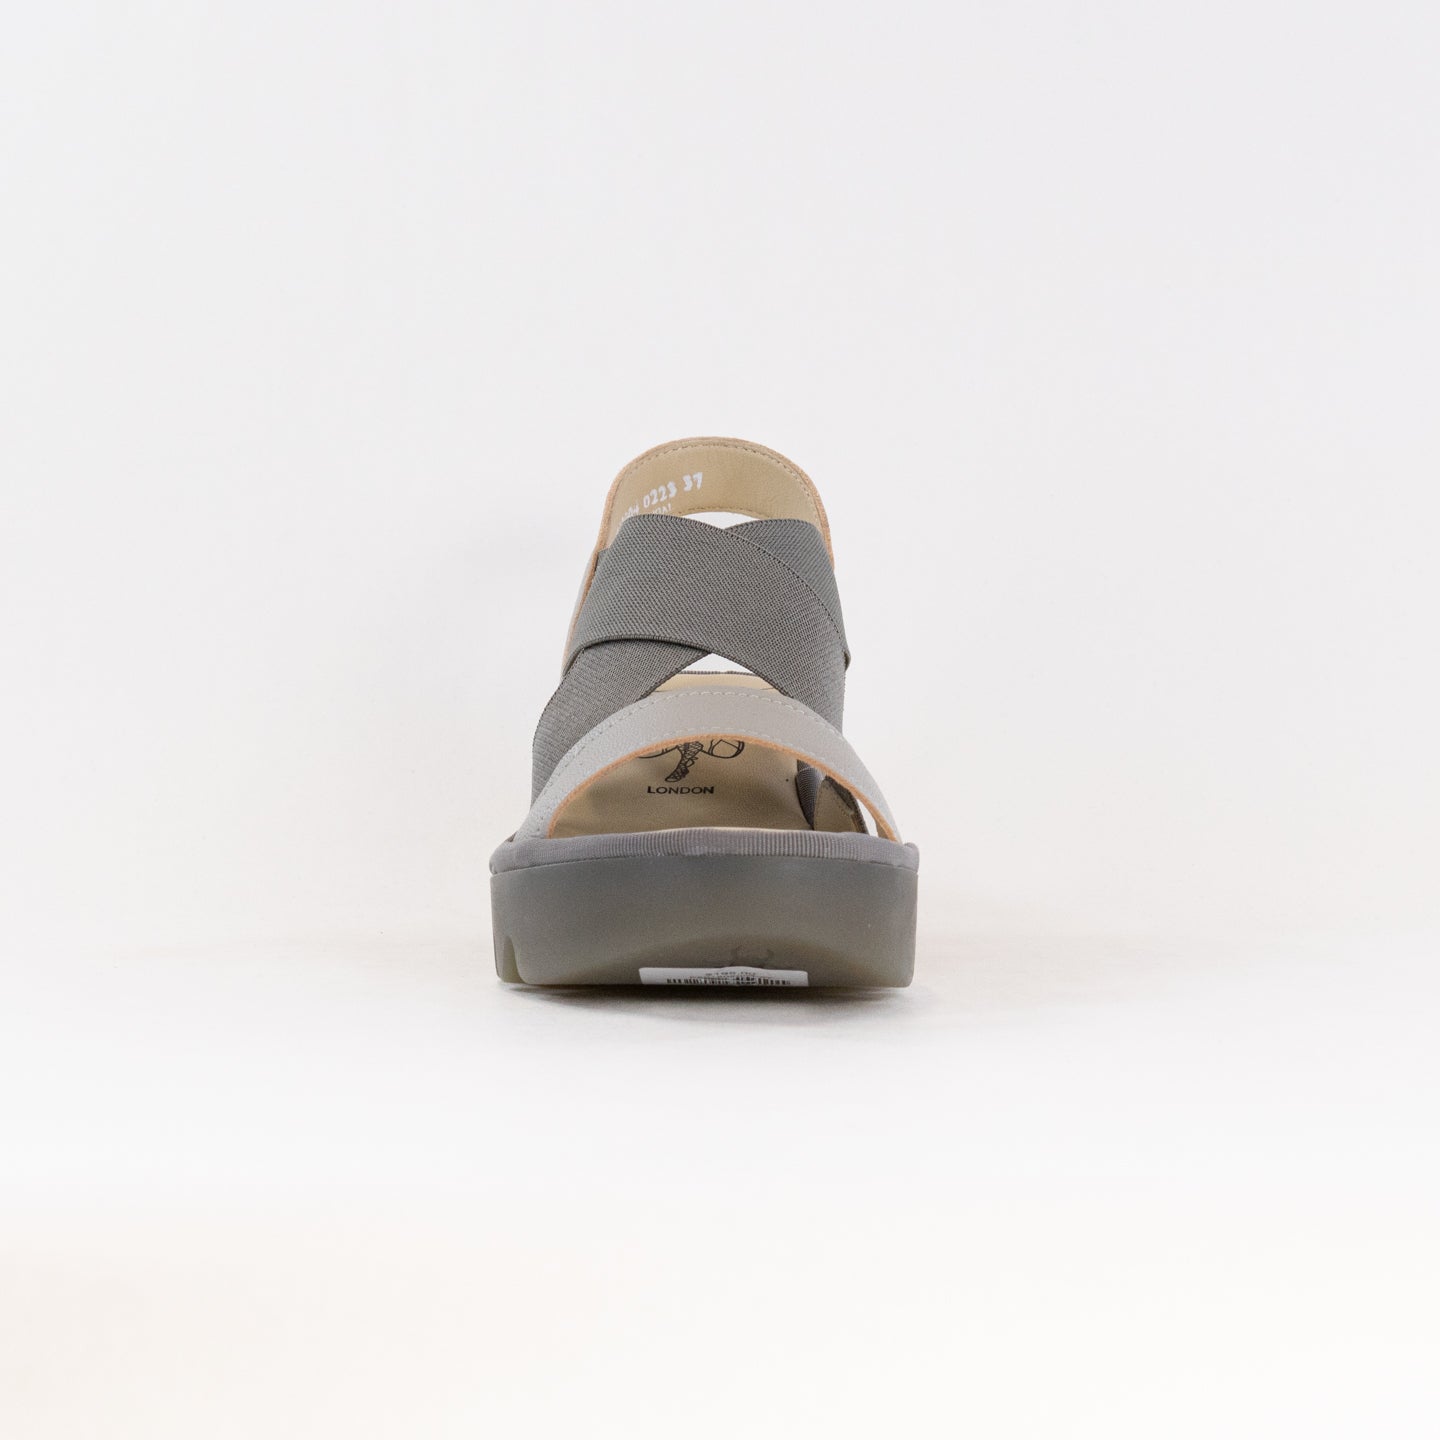 FLY London Crossover Sandals TAJI502FLY (Women's) - Silver